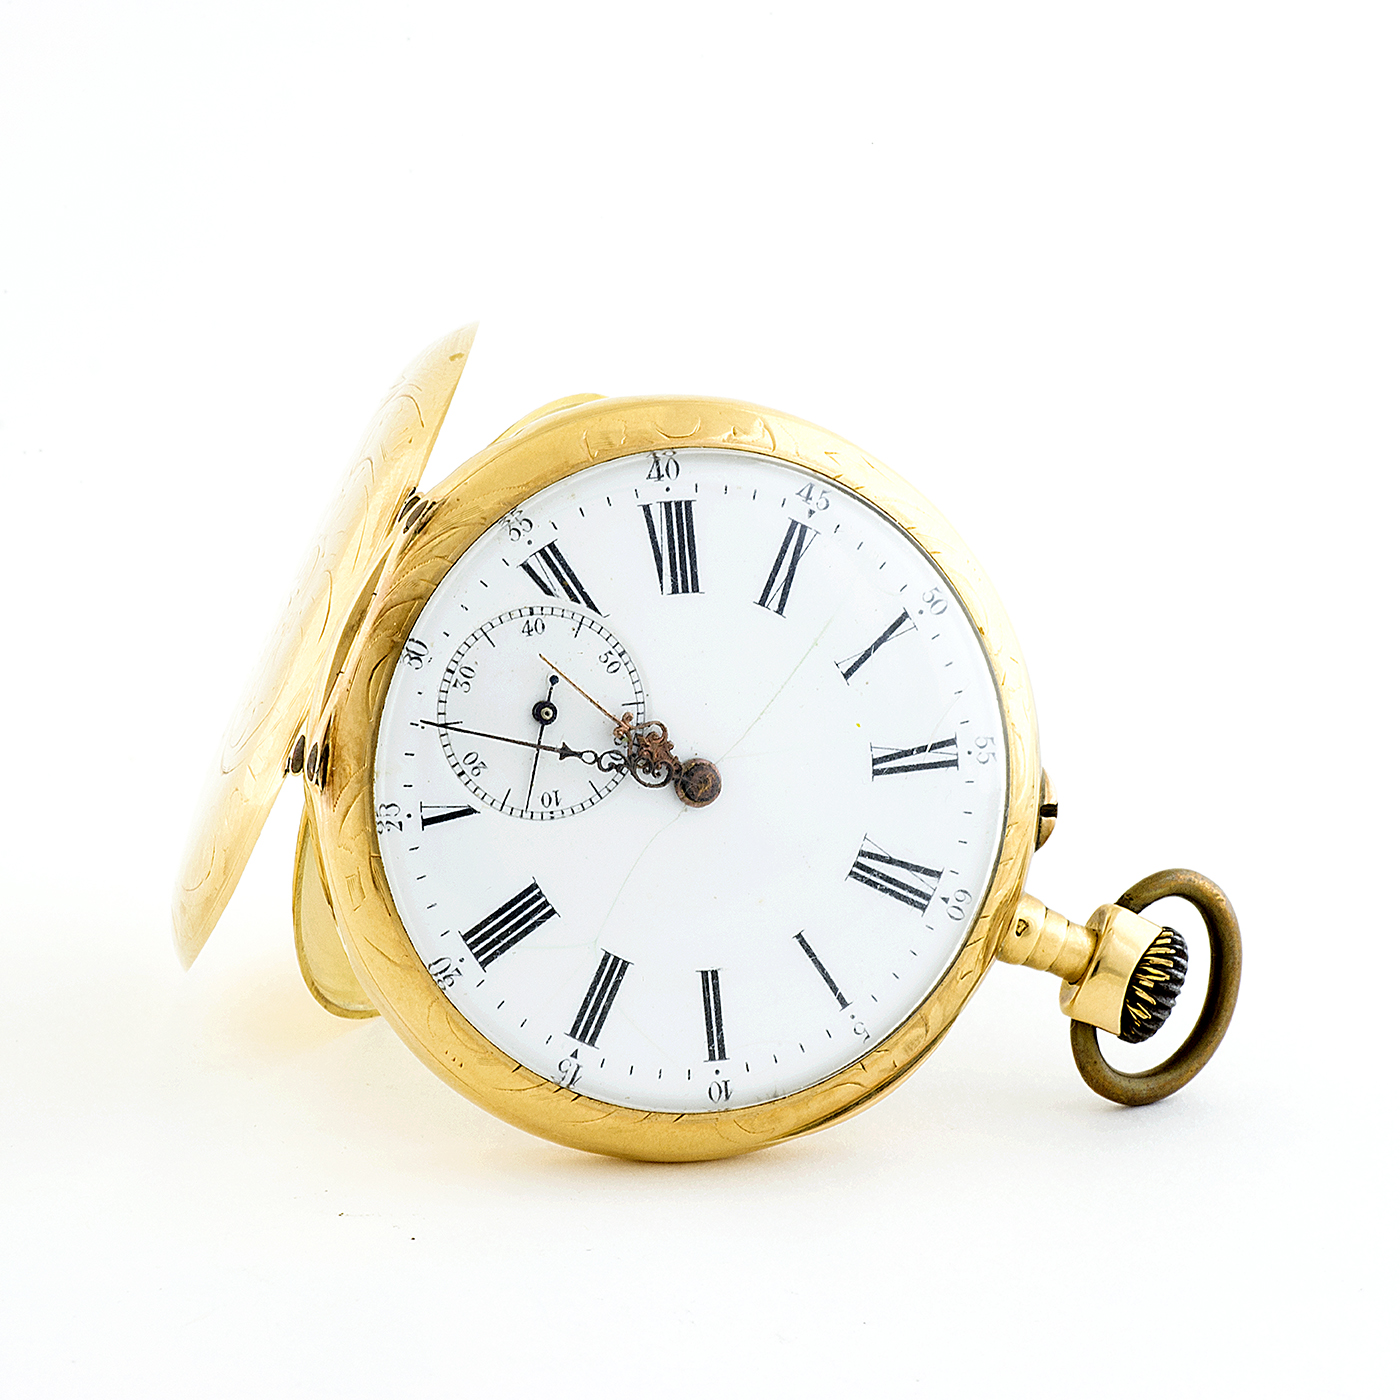 Reloj de bolsillo para caballero, lepine y remontoir. Fabricante Suizo. Fecha ca. 1880